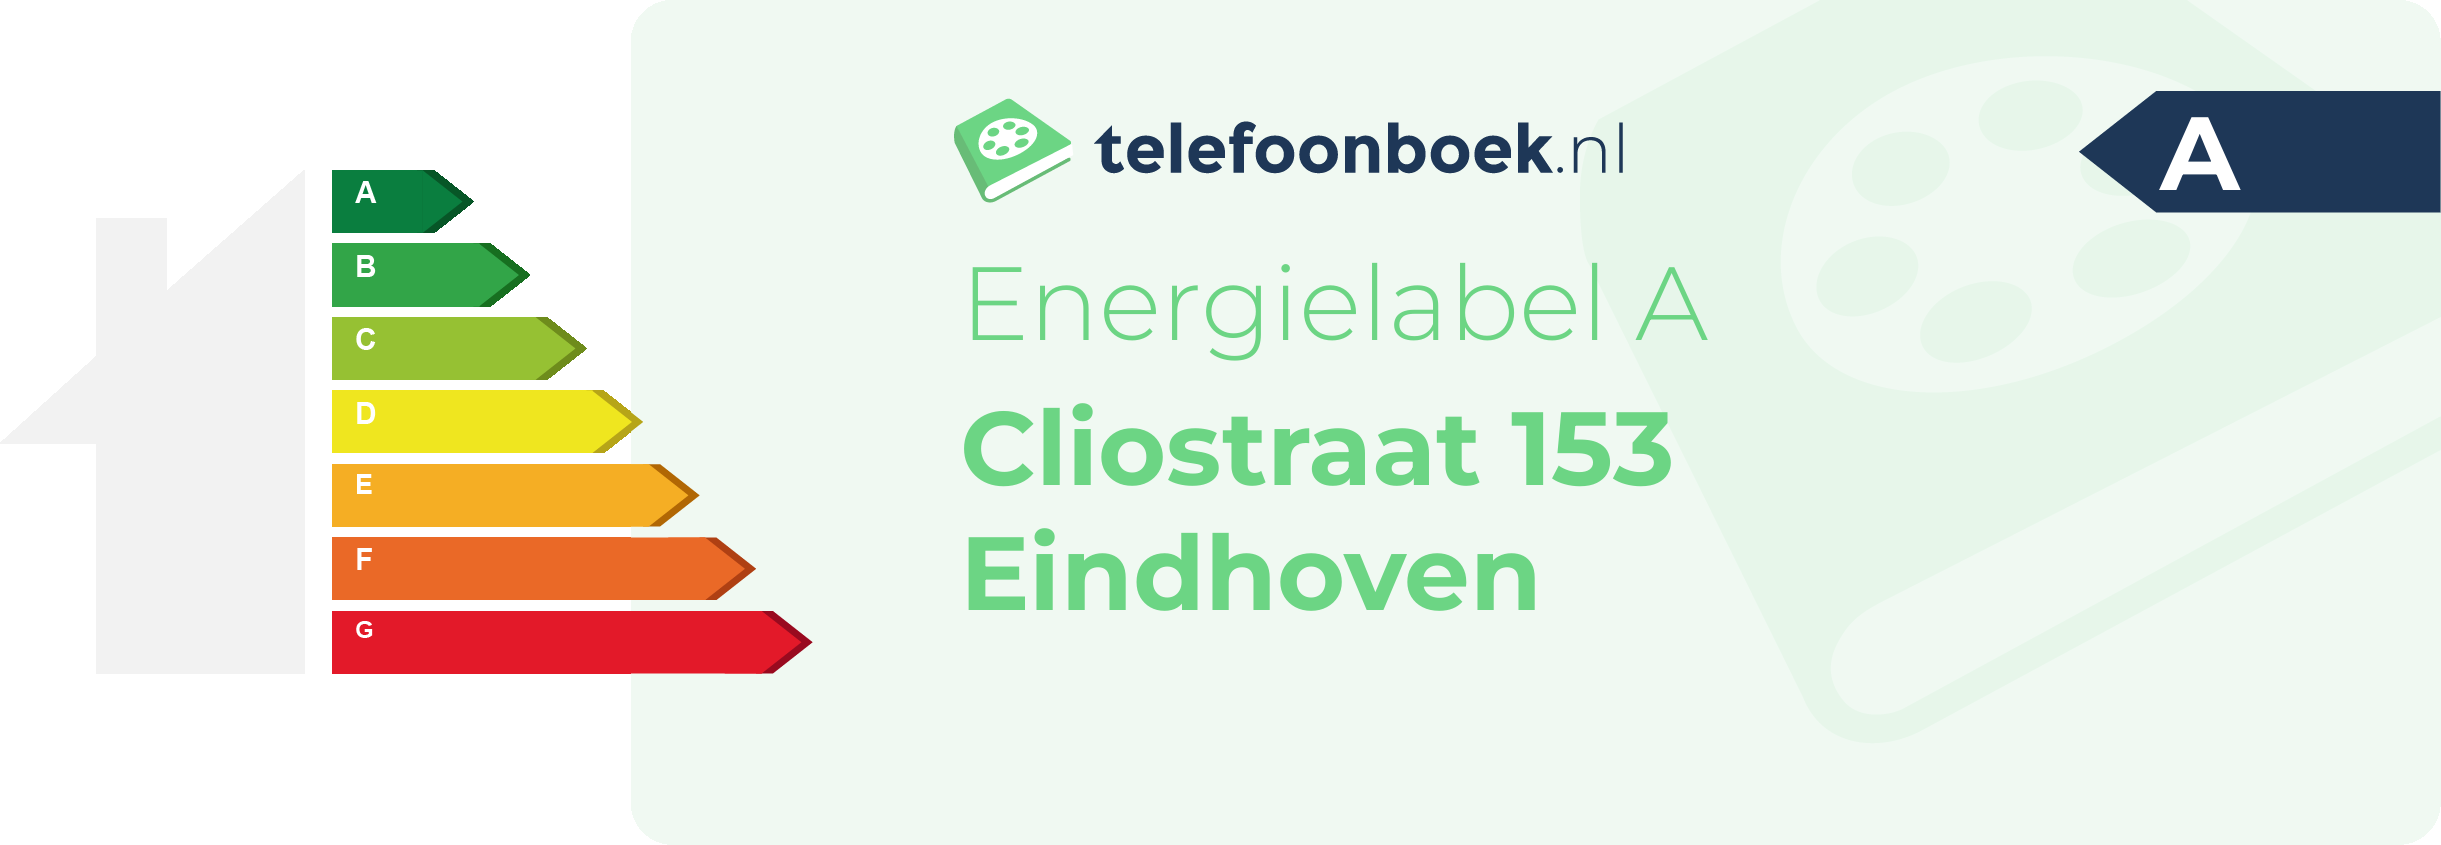 Energielabel Cliostraat 153 Eindhoven